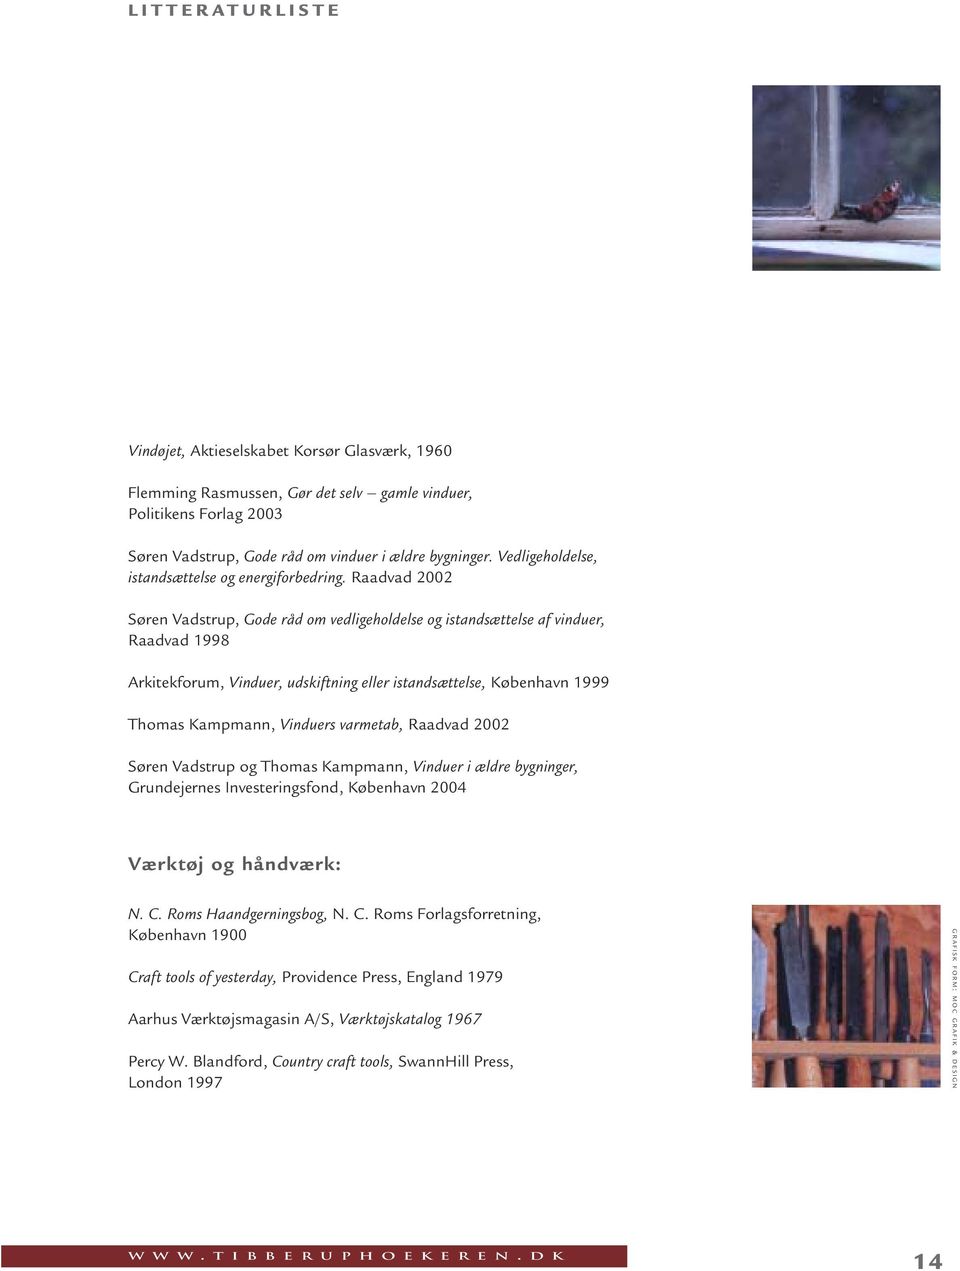 Raadvad 2002 Søren Vadstrup, Gode råd om vedligeholdelse og istandsættelse af vinduer, Raadvad 1998 Arkitekforum, Vinduer, udskiftning eller istandsættelse, København 1999 Thomas Kampmann, Vinduers